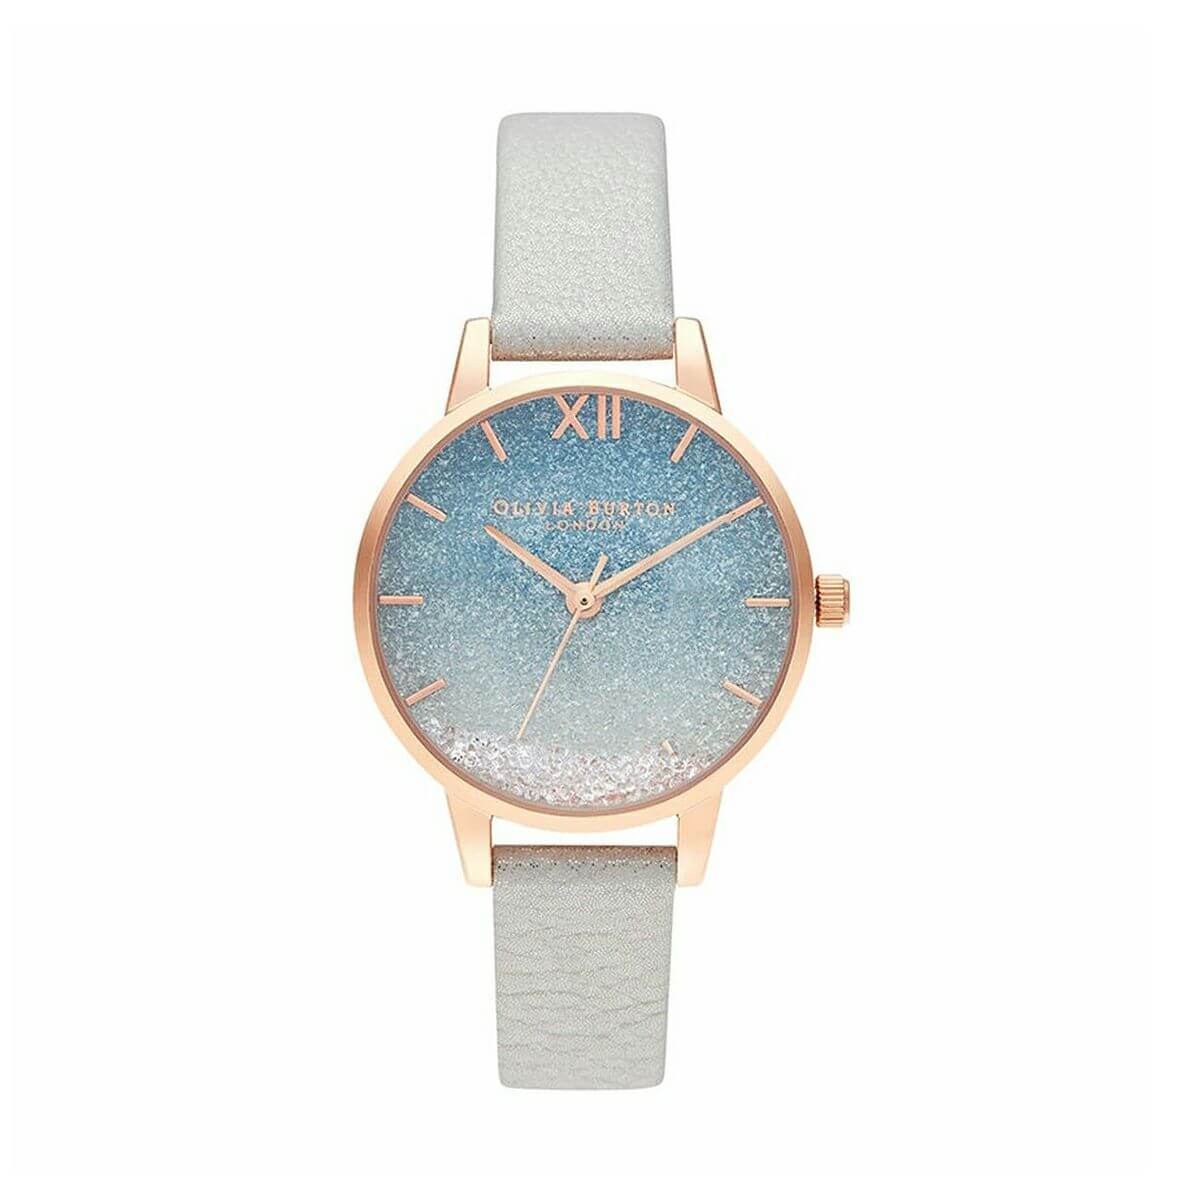 腕時計 人気ブランド21選 彼女や女性へのプレゼントに 今すぐプレゼント